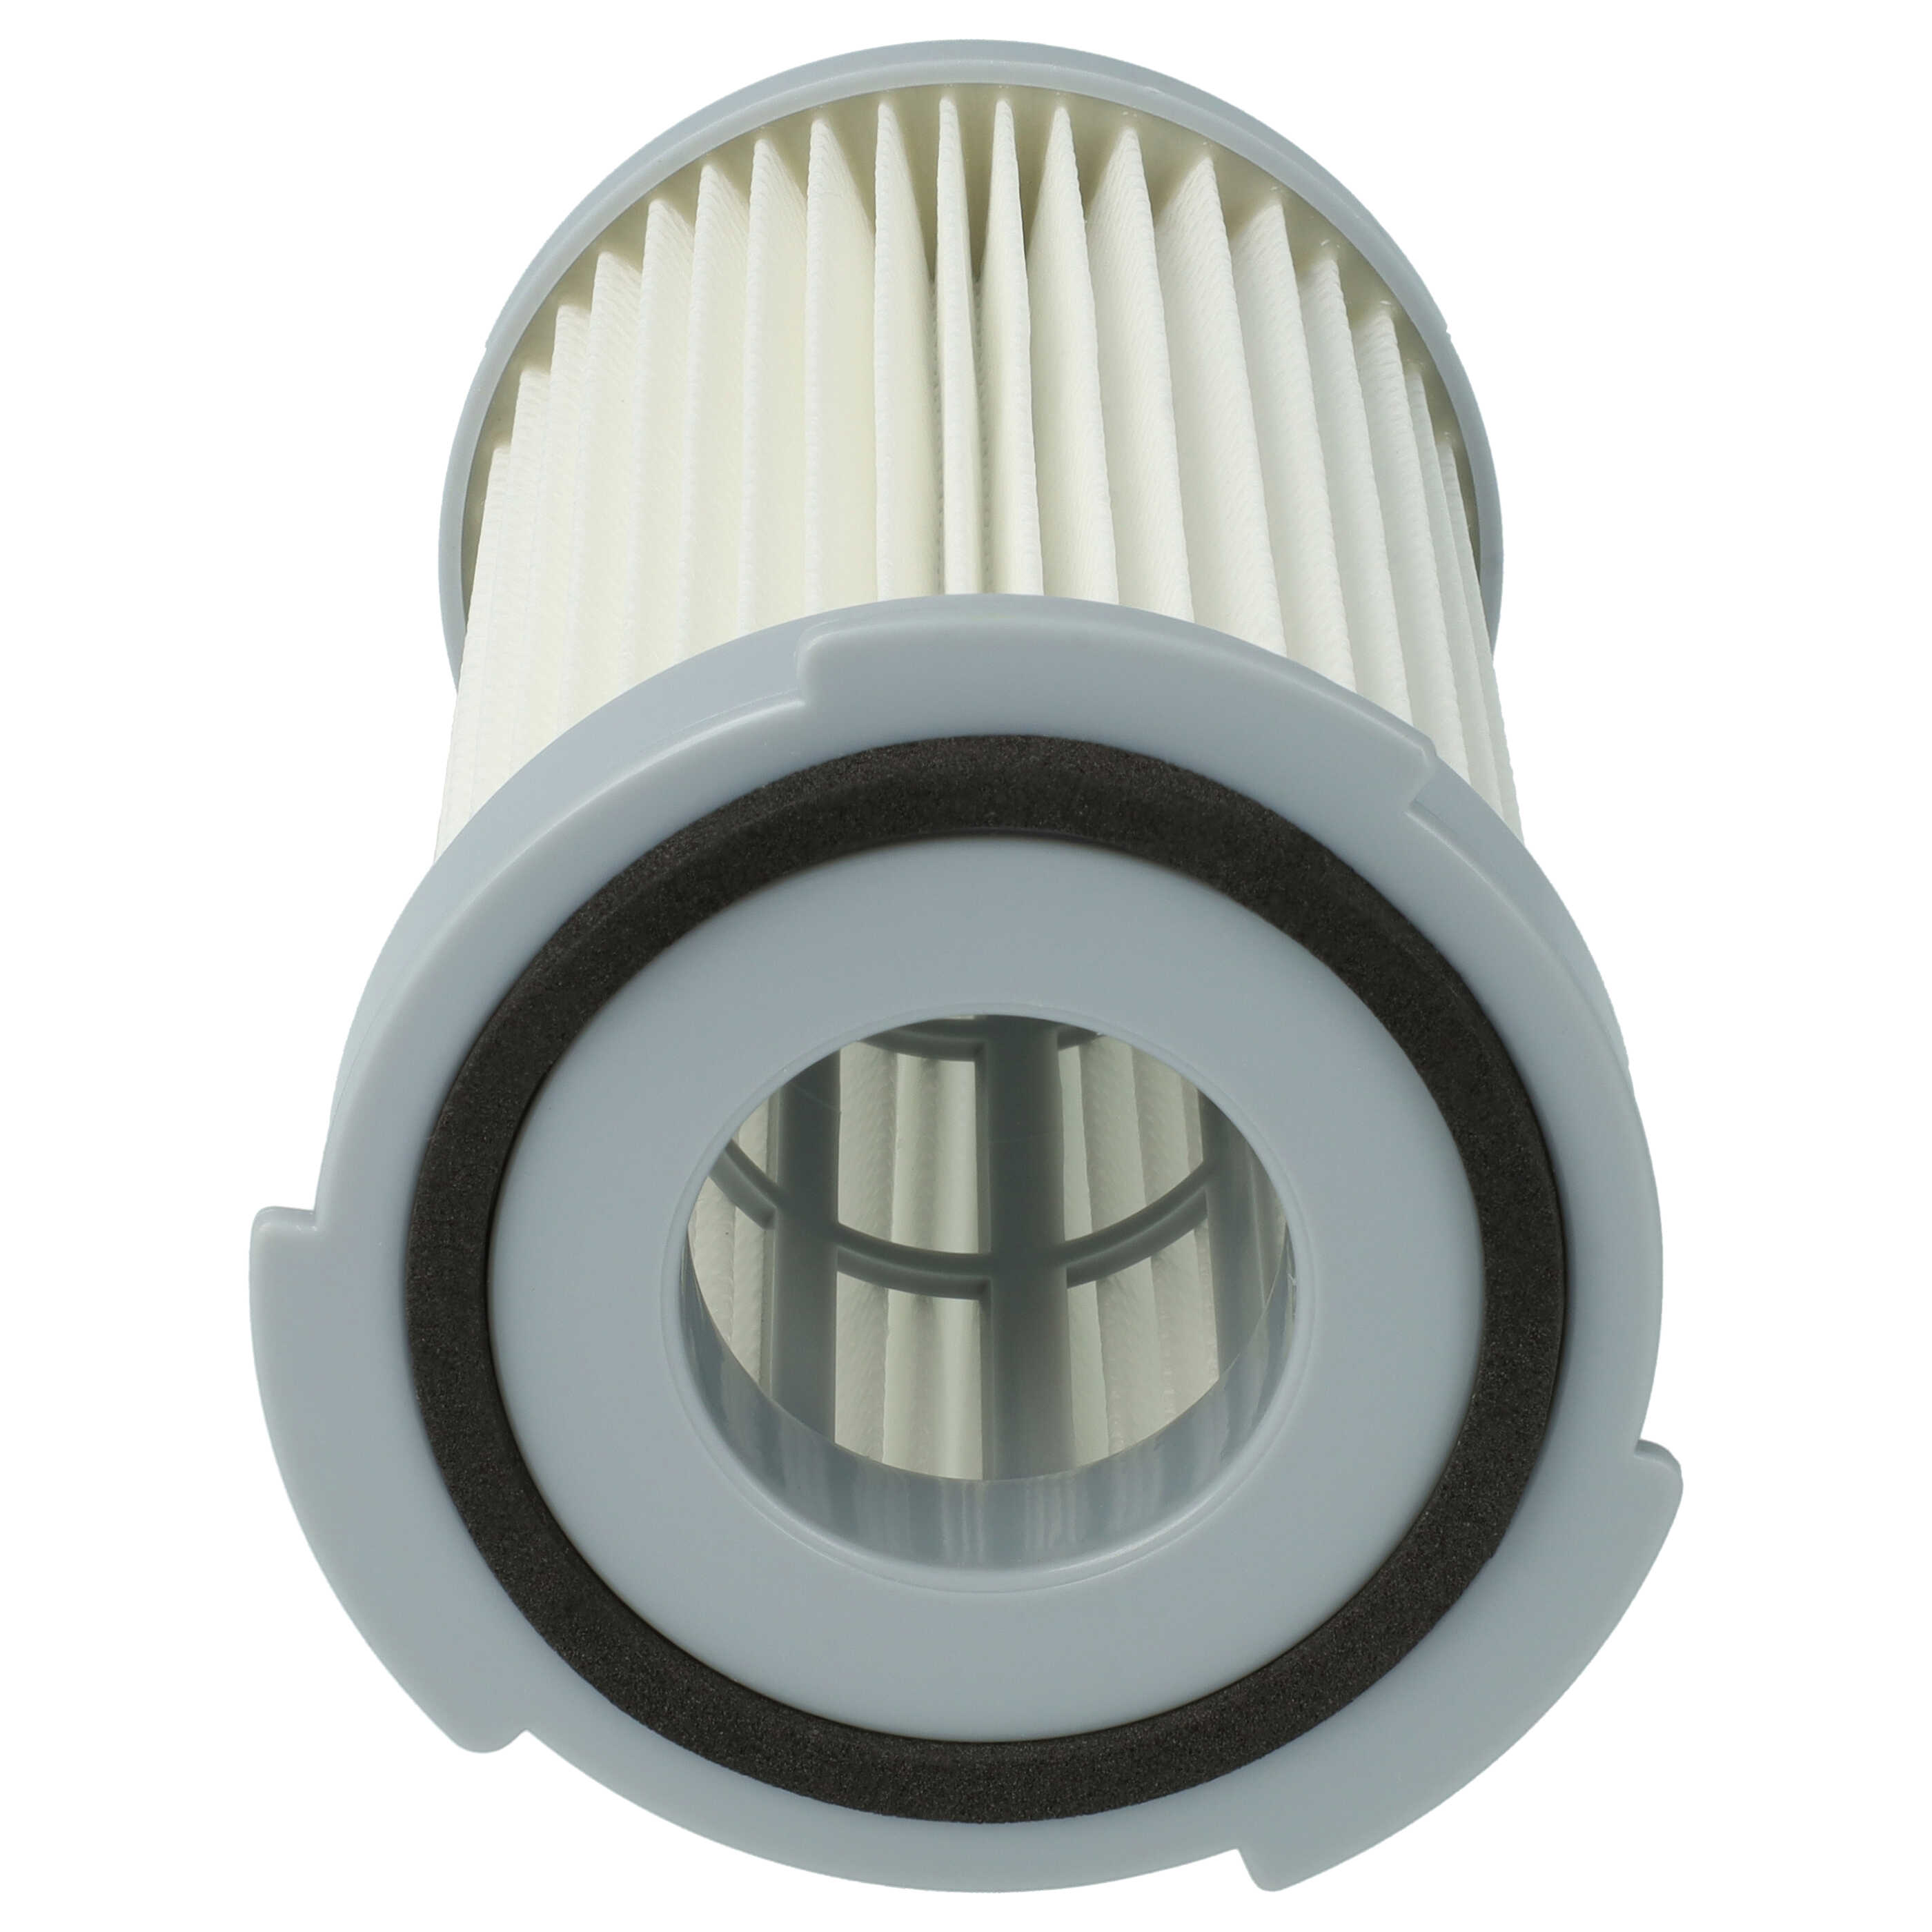 Filtre remplace Electrolux 9001966051 pour aspirateur - filtre HEPA F5